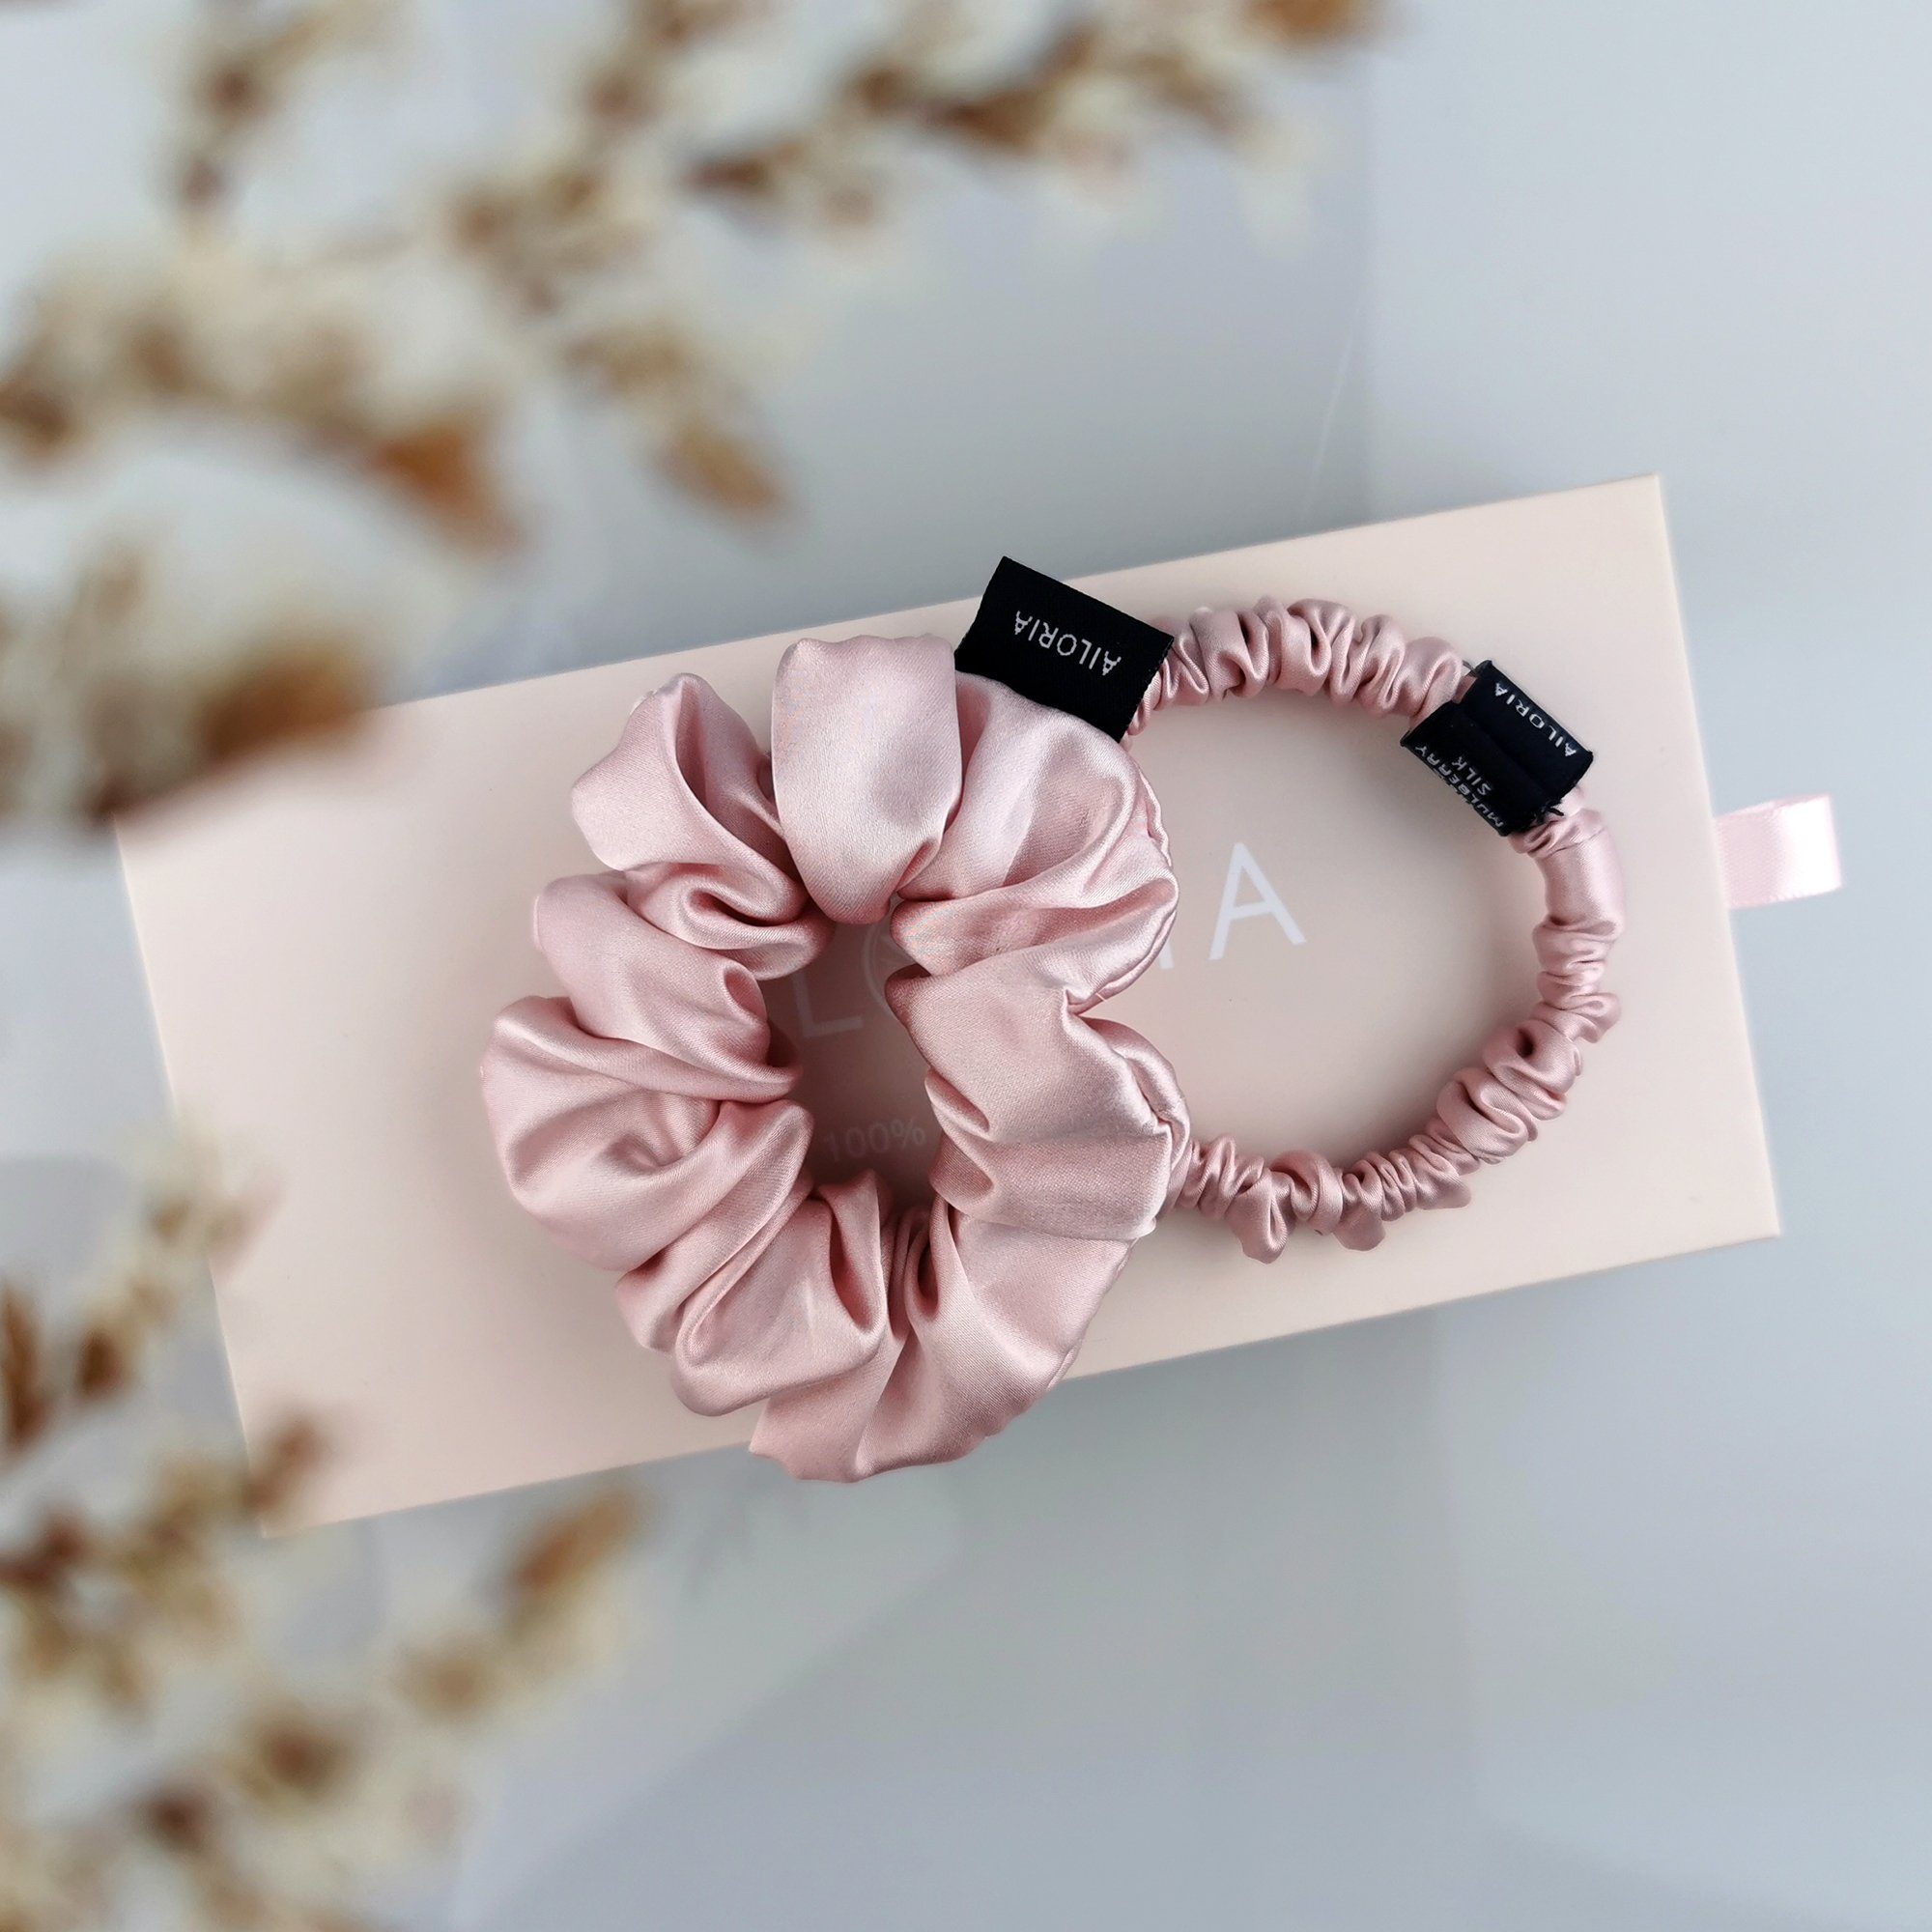 s (Größe M) AILORIA Haargummi DOUX m und Haargummis Luxuriöses Set und scrunchies seide, aus pink set aus S